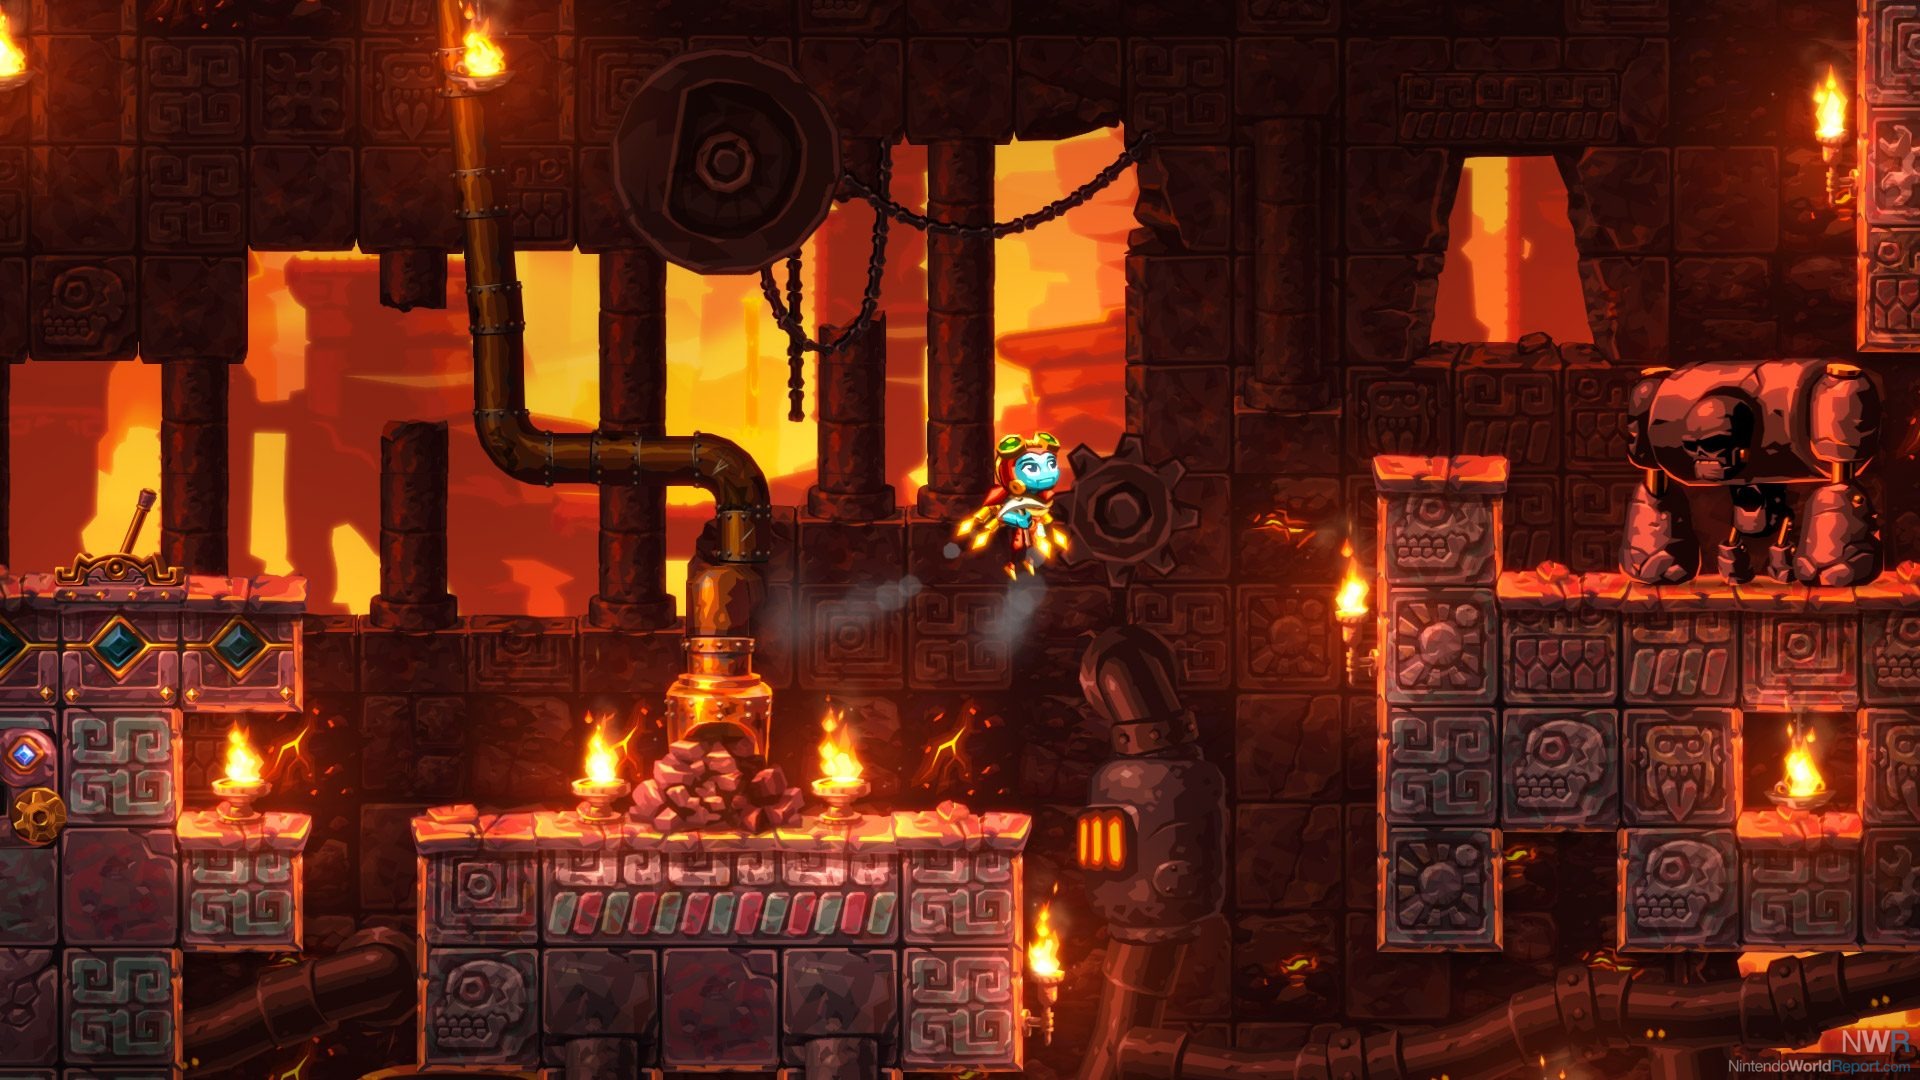 HD desktop wallpaper of SteamWorld Dig 2, featuring a robot character navigating through fiery underground ruins.